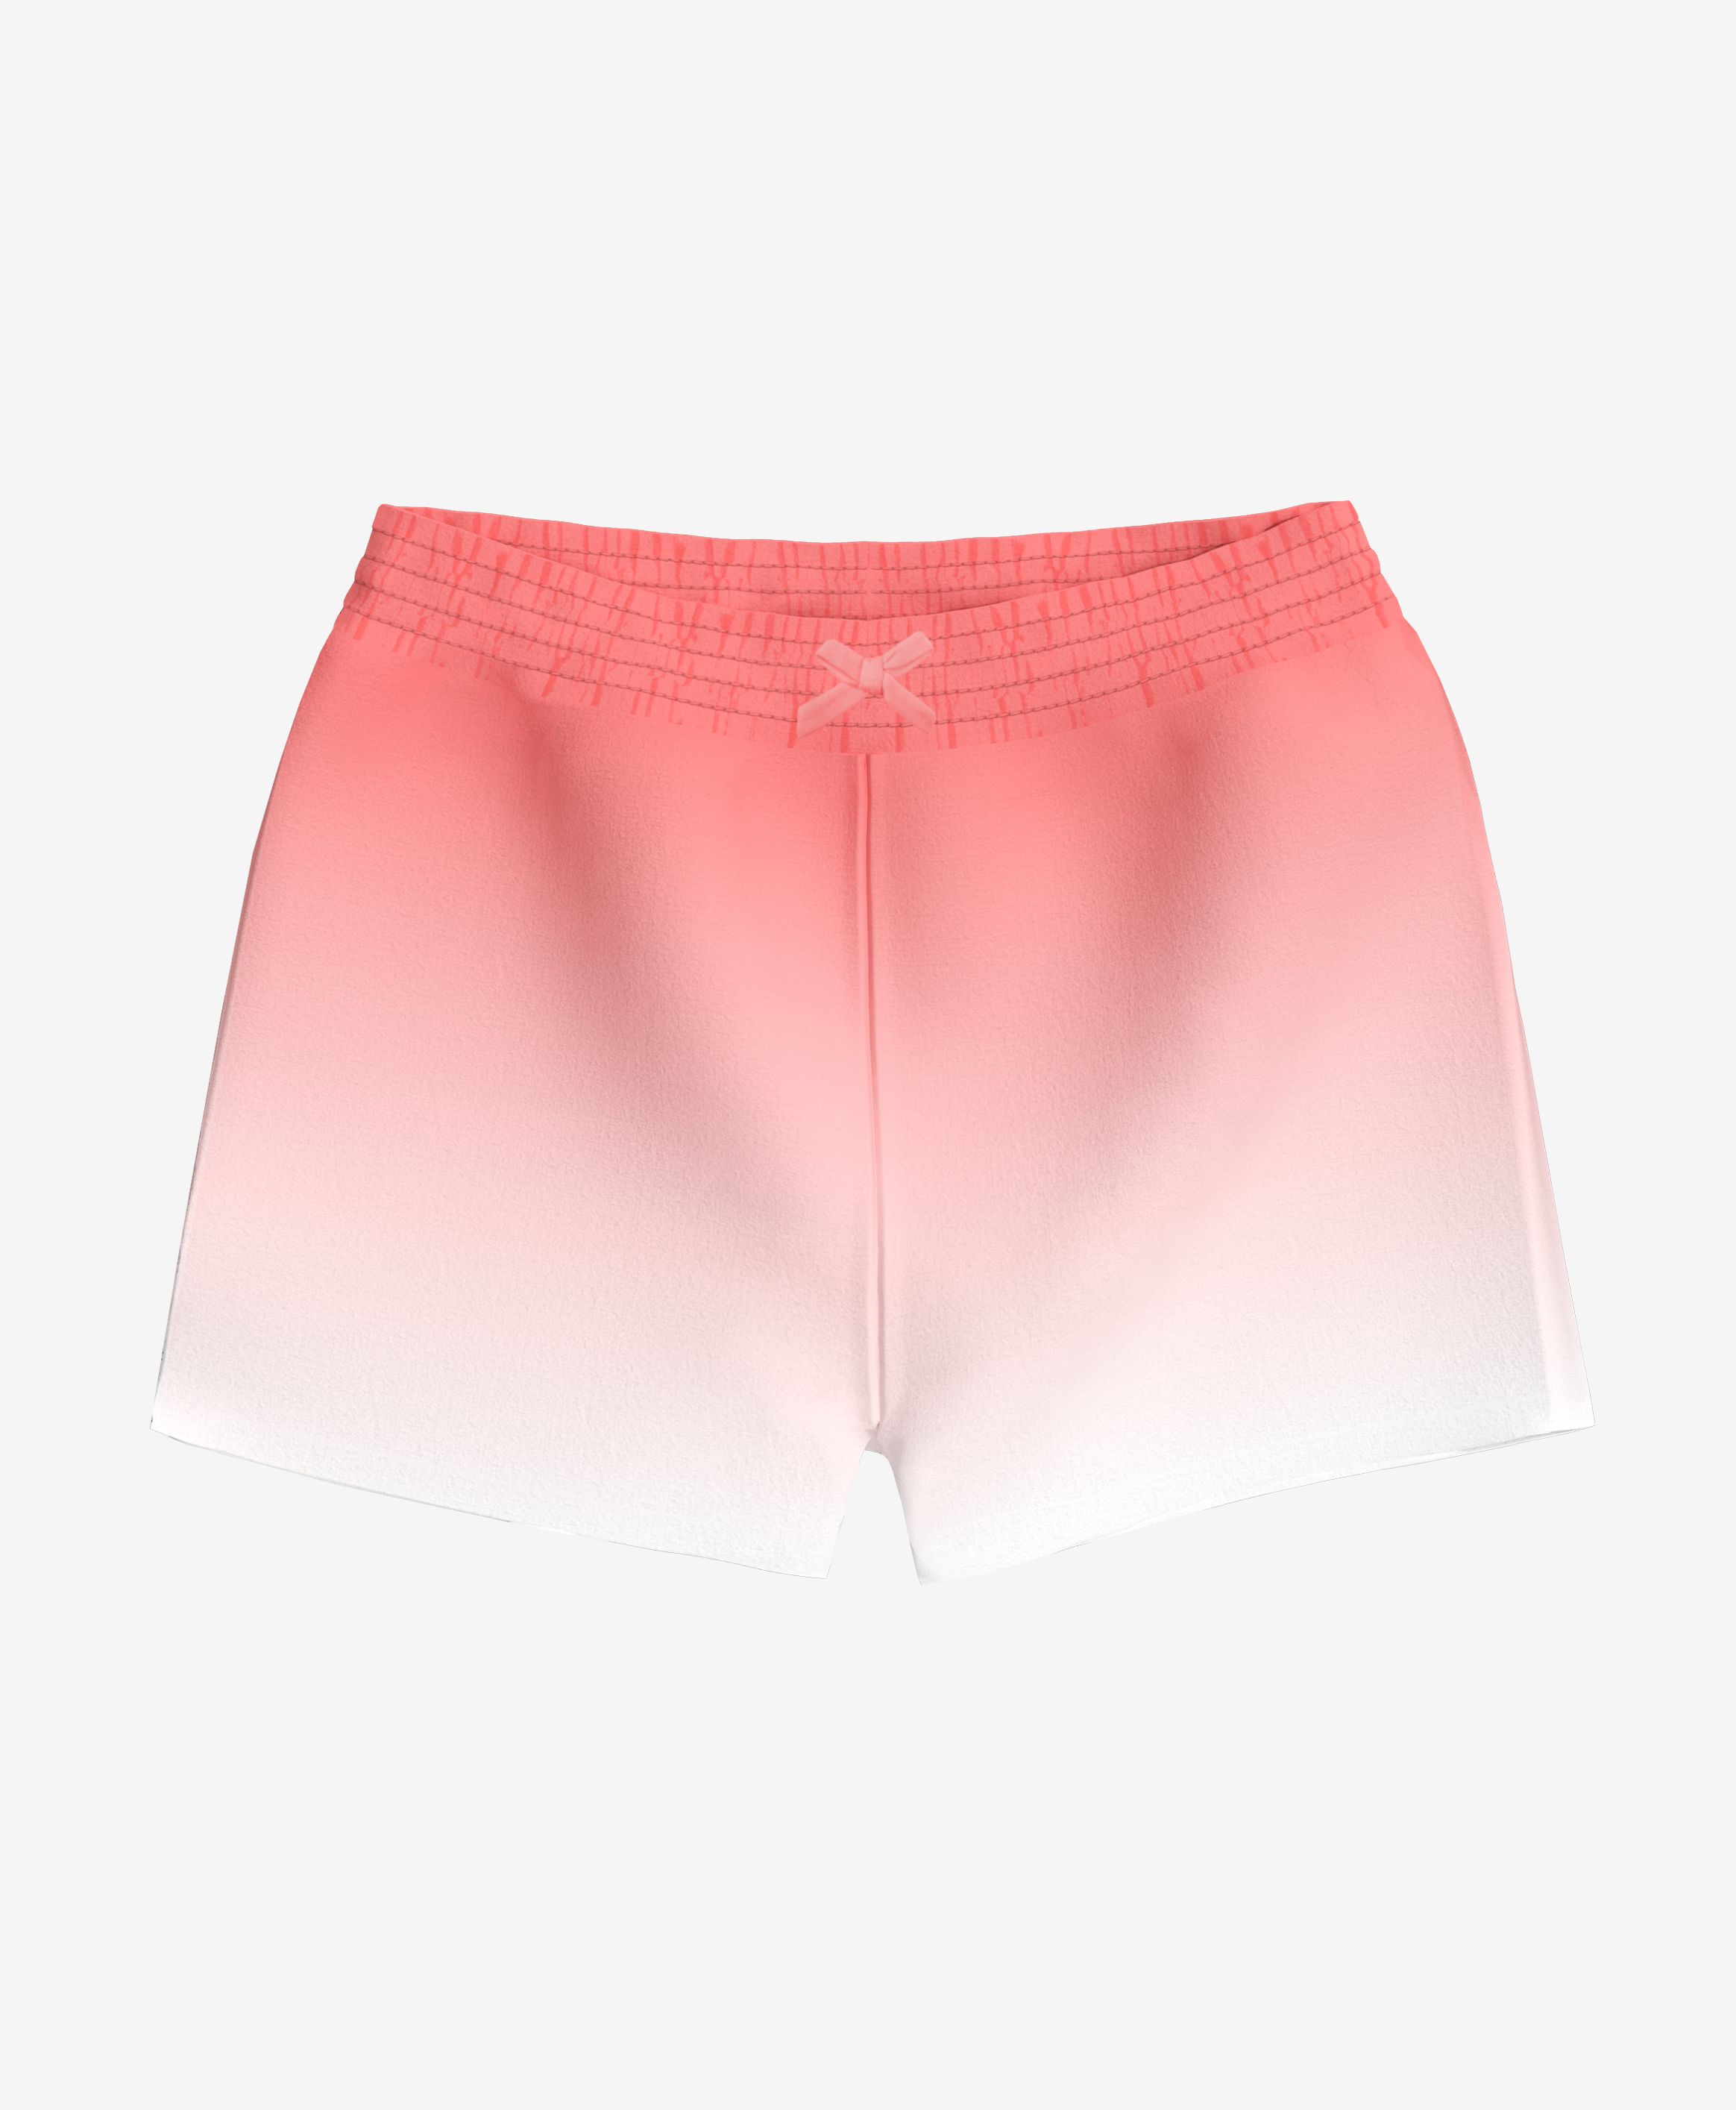 Shorts, 100% Baumwolle, für Mädchen, rosa, weiß, 74-98 cm